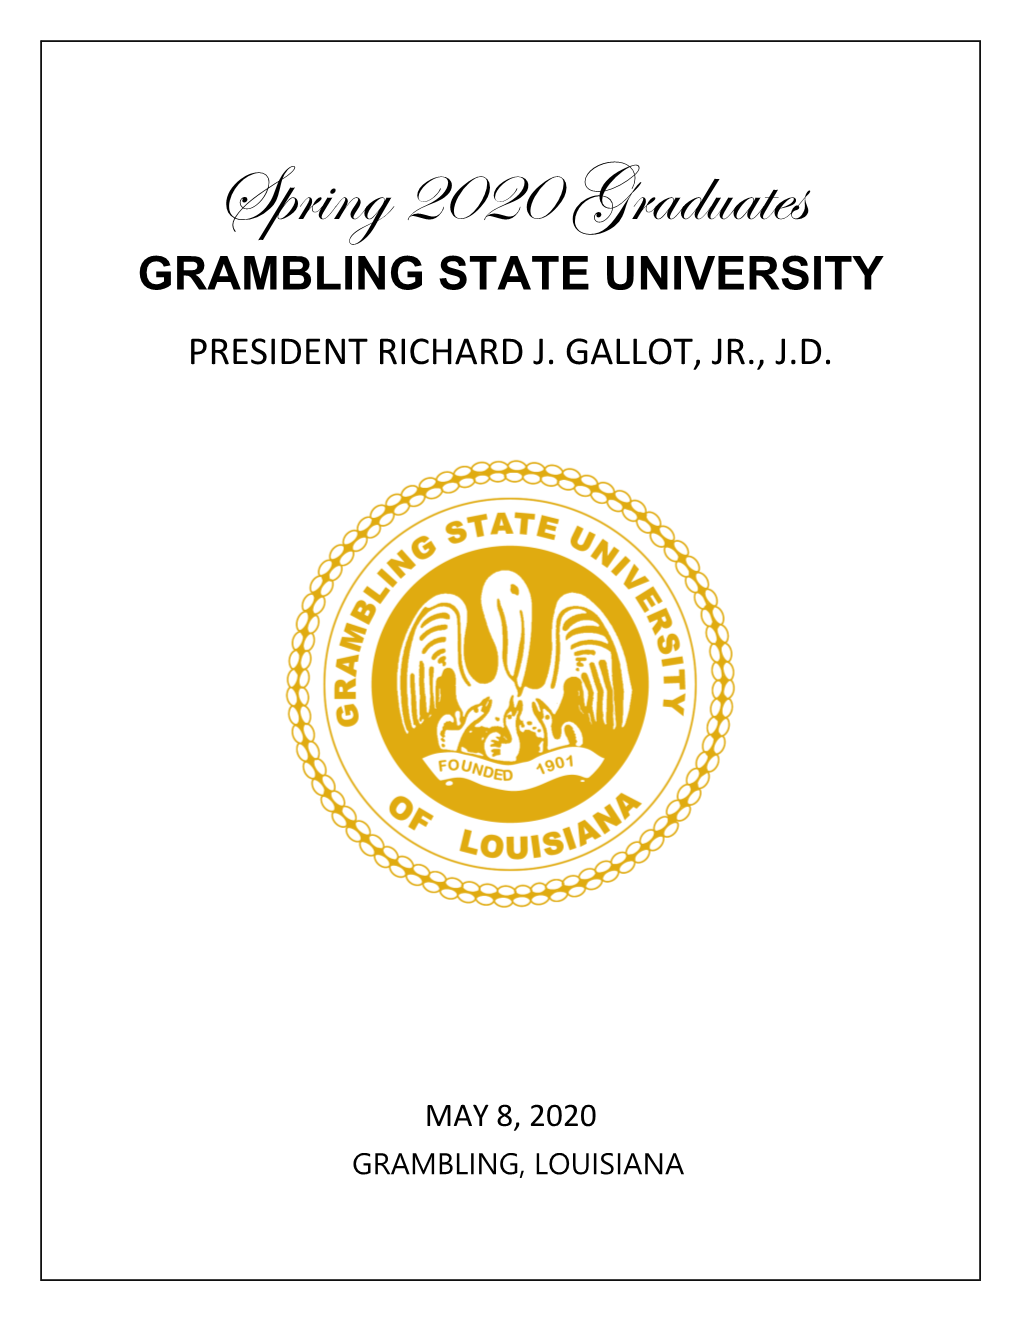 GRAMBLING STATE UNIVERSITY 2020 Spring Graduates